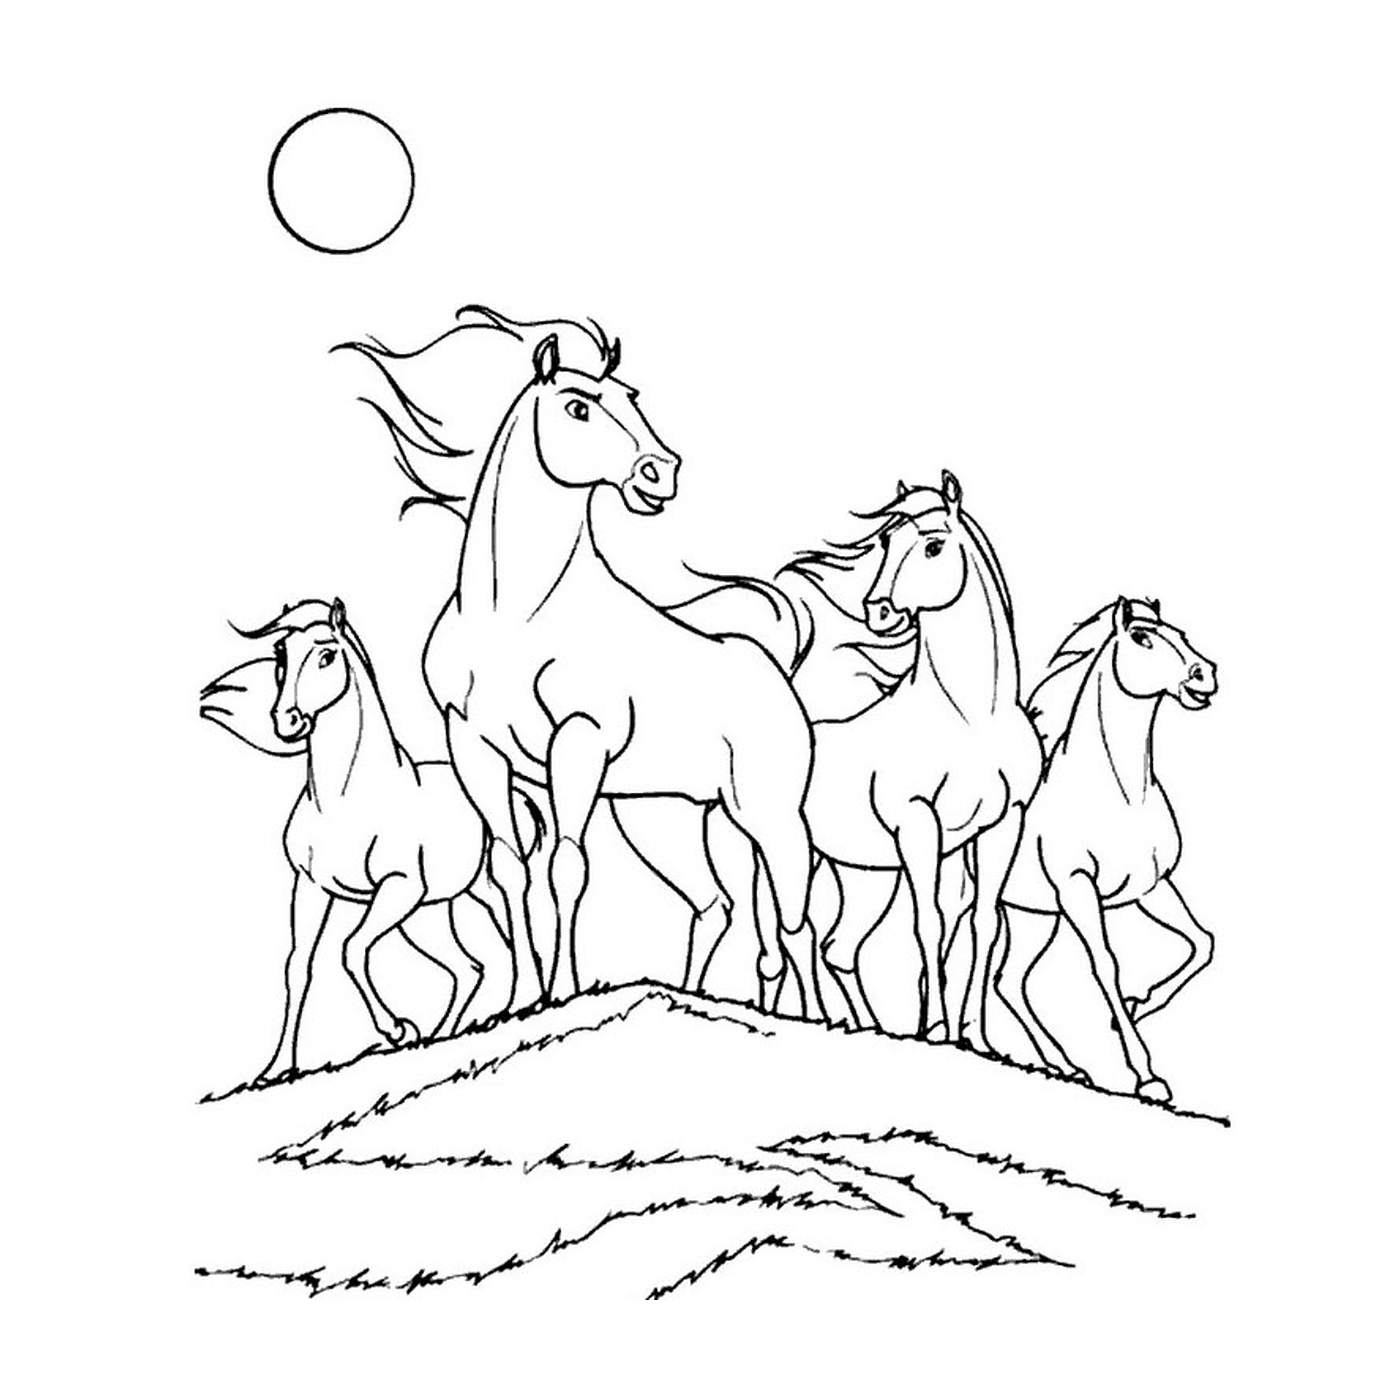  Группа лошадей стоит на травяном холме 